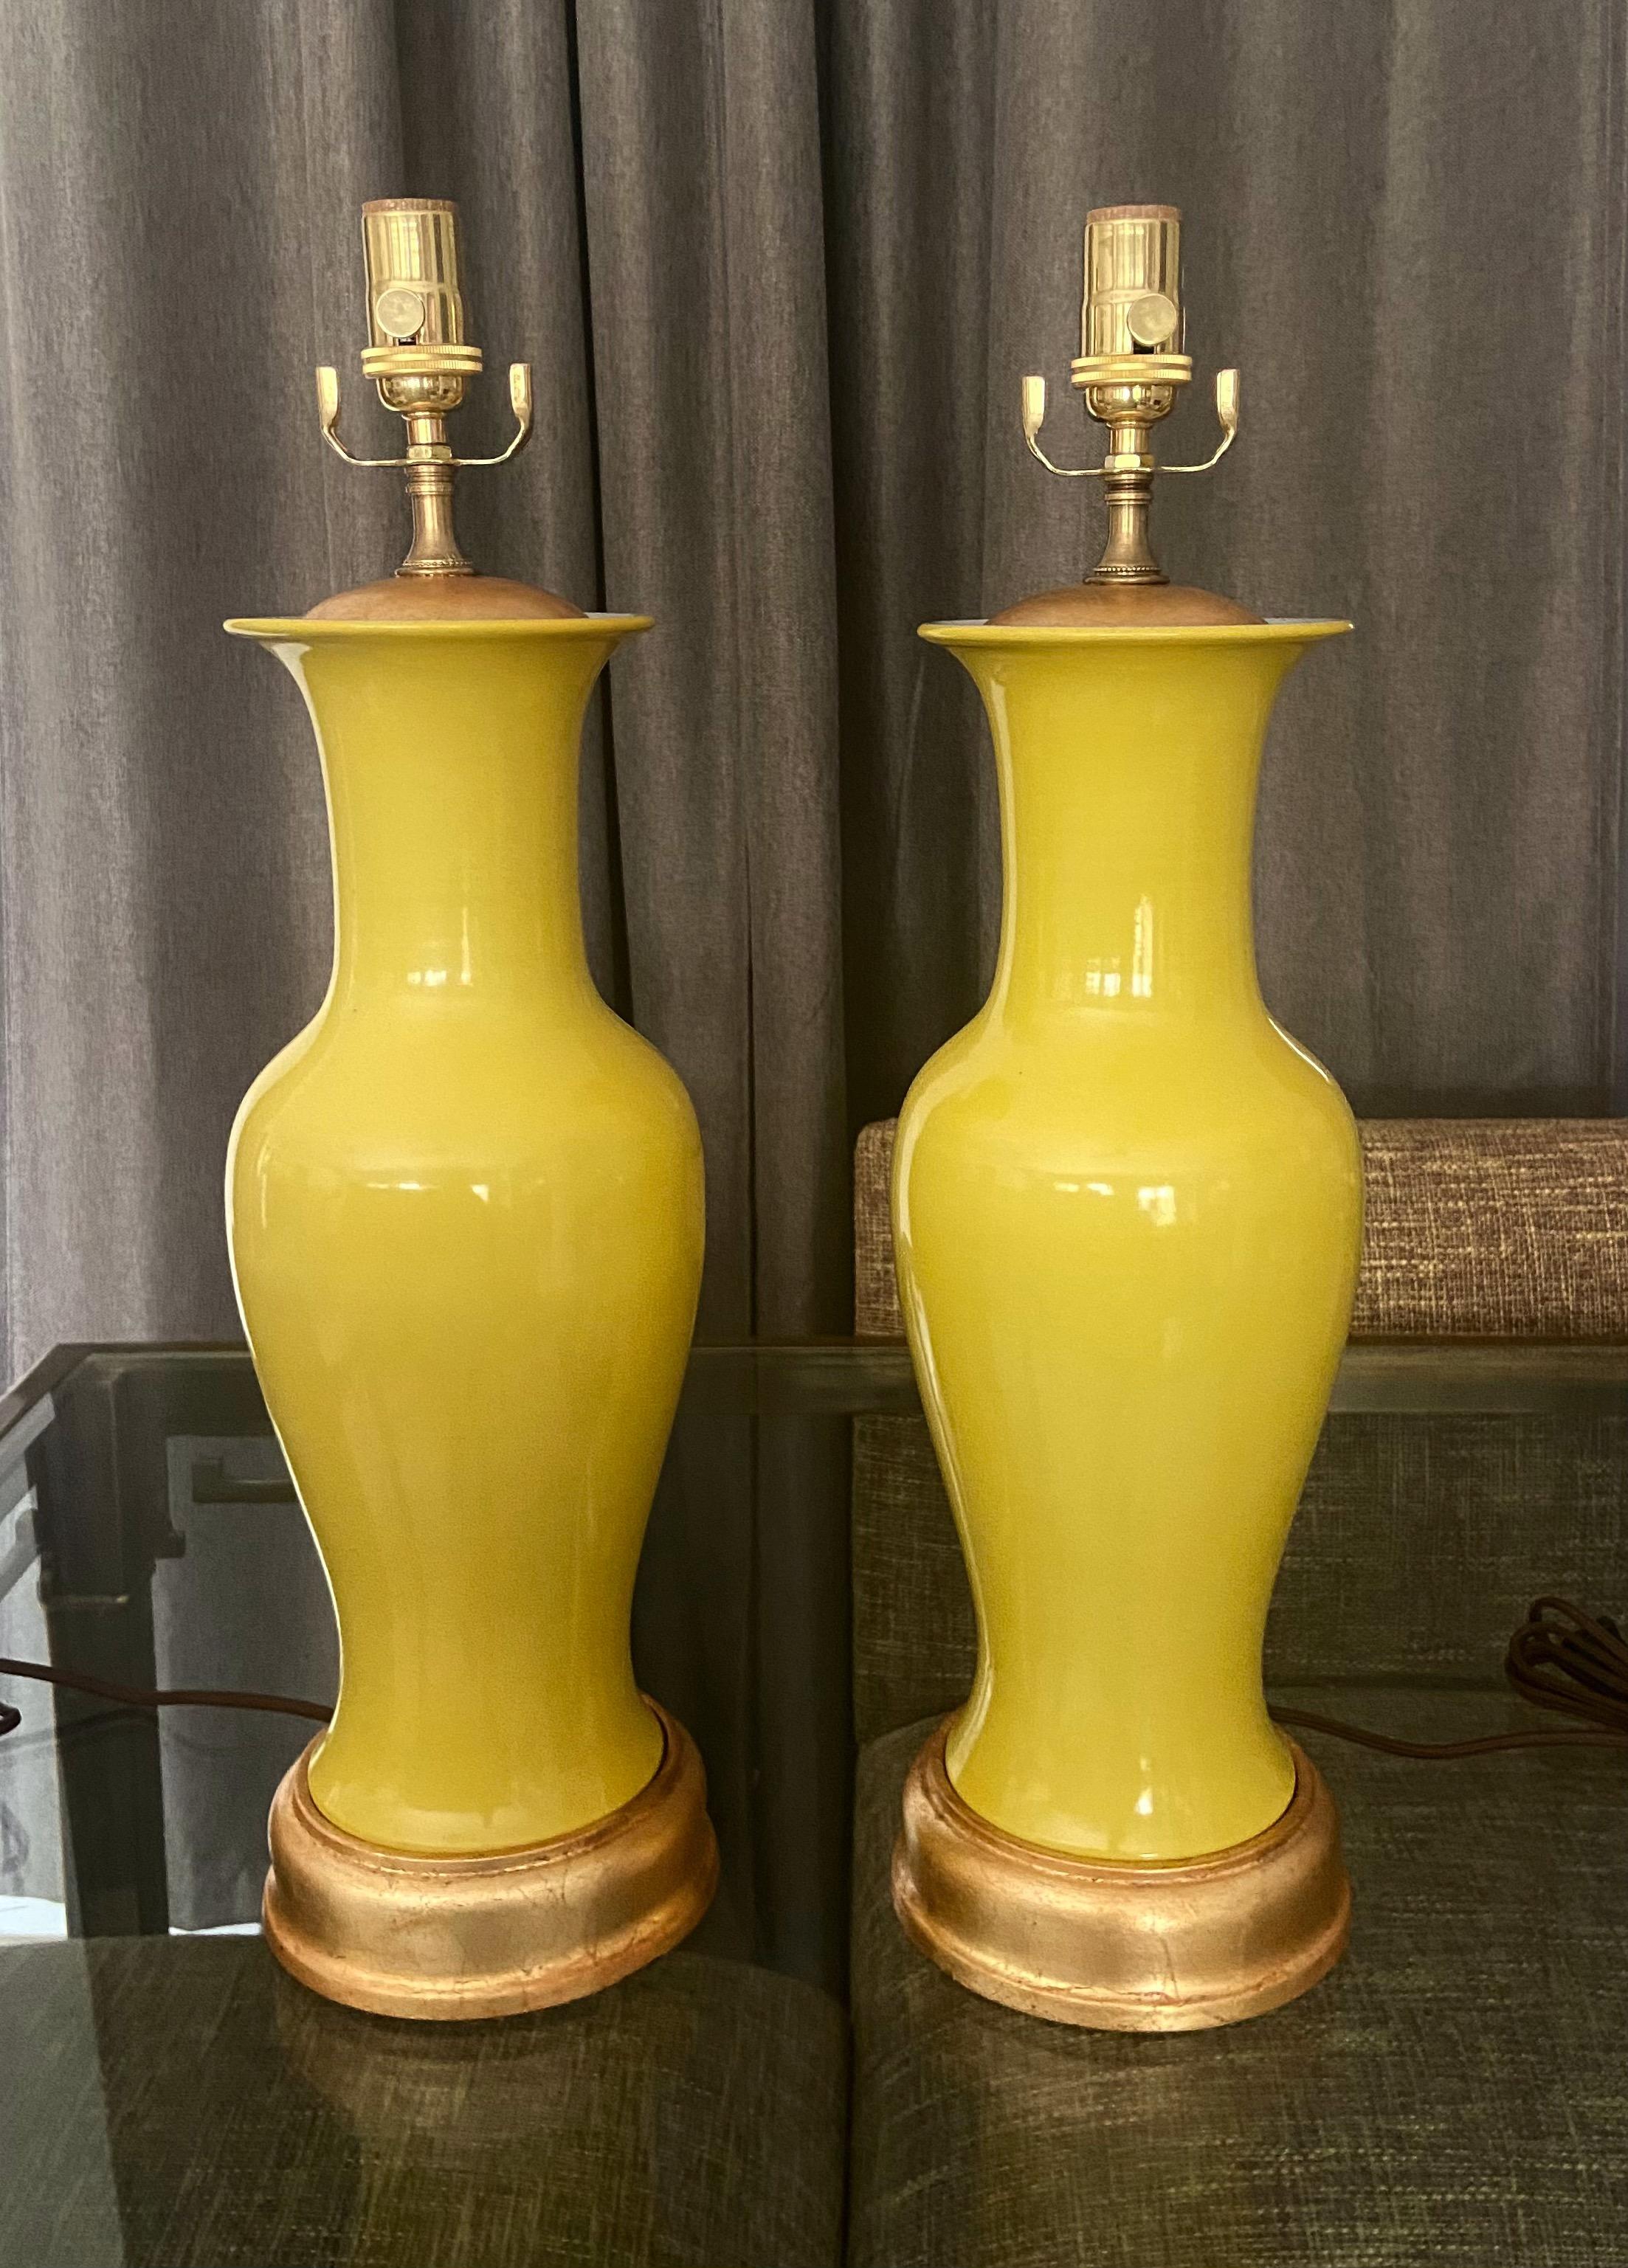 Paire de vases de forme balustre en porcelaine de couleur jaune d'Asie montés sur des pieds de lampe en bois tourné et doré. Nouvellement câblé avec de nouvelles prises en laiton à 3 voies et des cordons en rayonne. La partie vase mesure 16